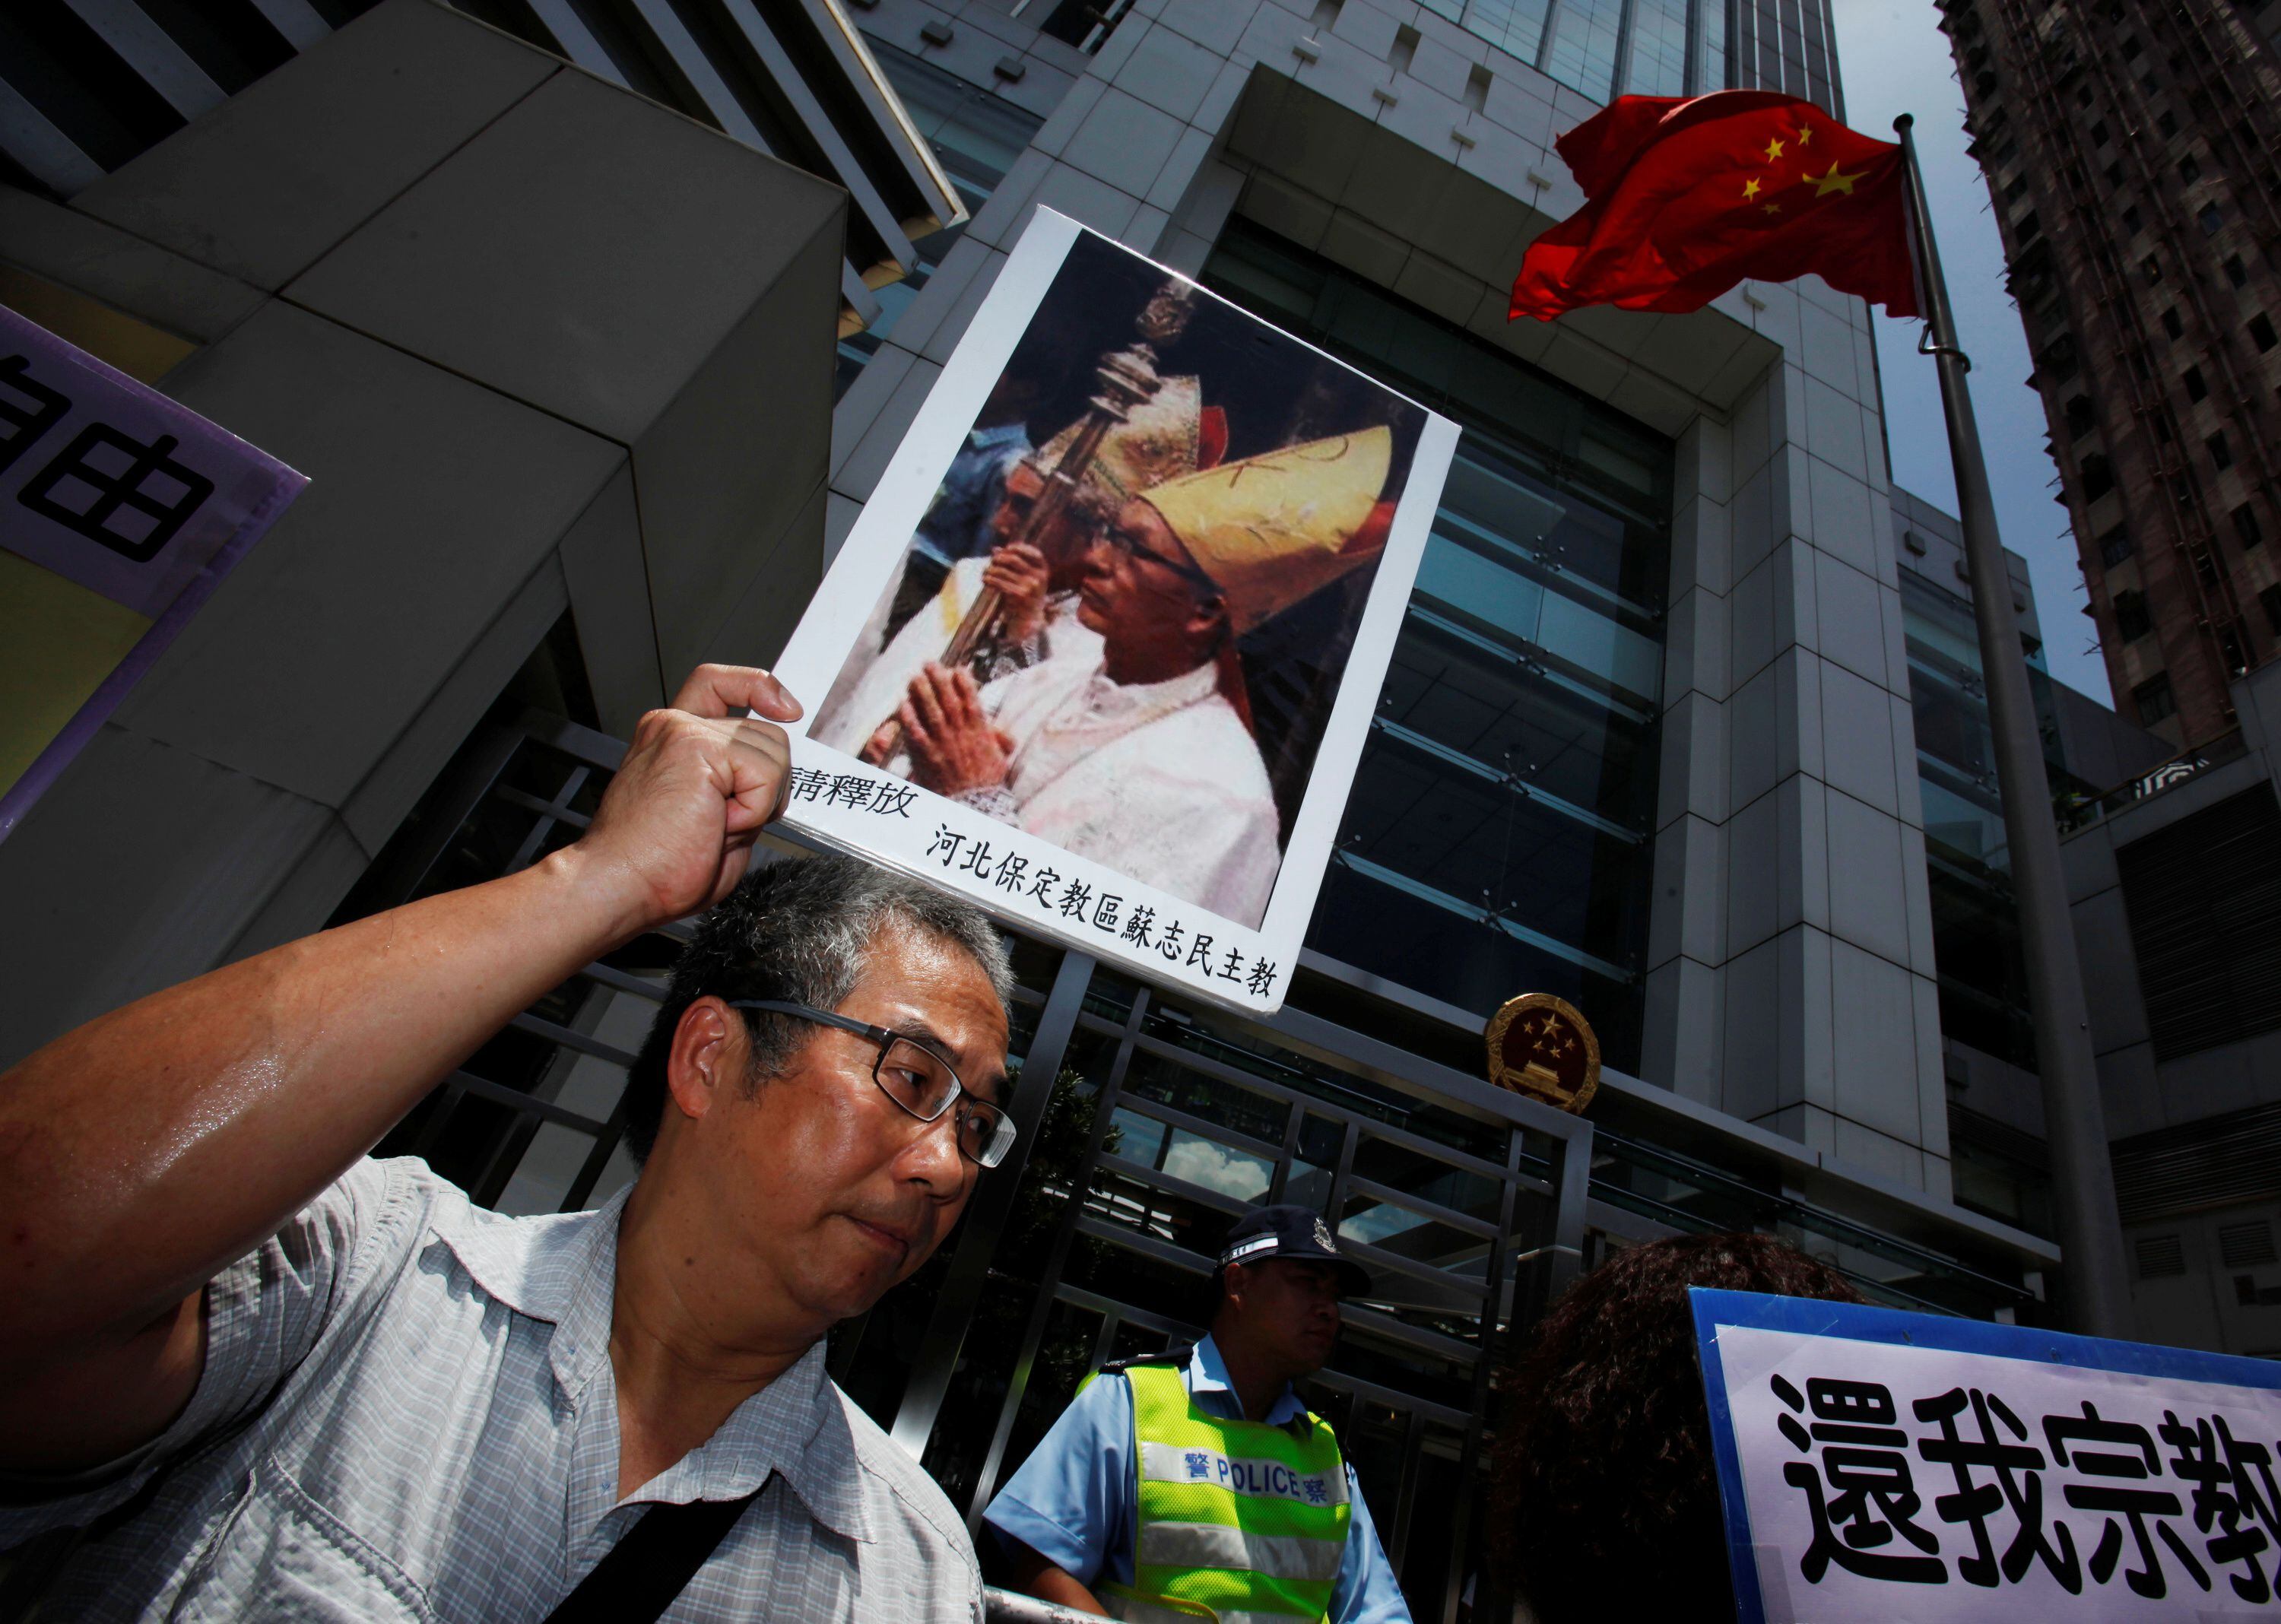 Un manifestante porta un retrato del obispo Su Zhi-ming de Baoding, provincia de Hebei, encarcelado en China y de quien se desconoce su paradero  (REUTERS/Bobby Yip)